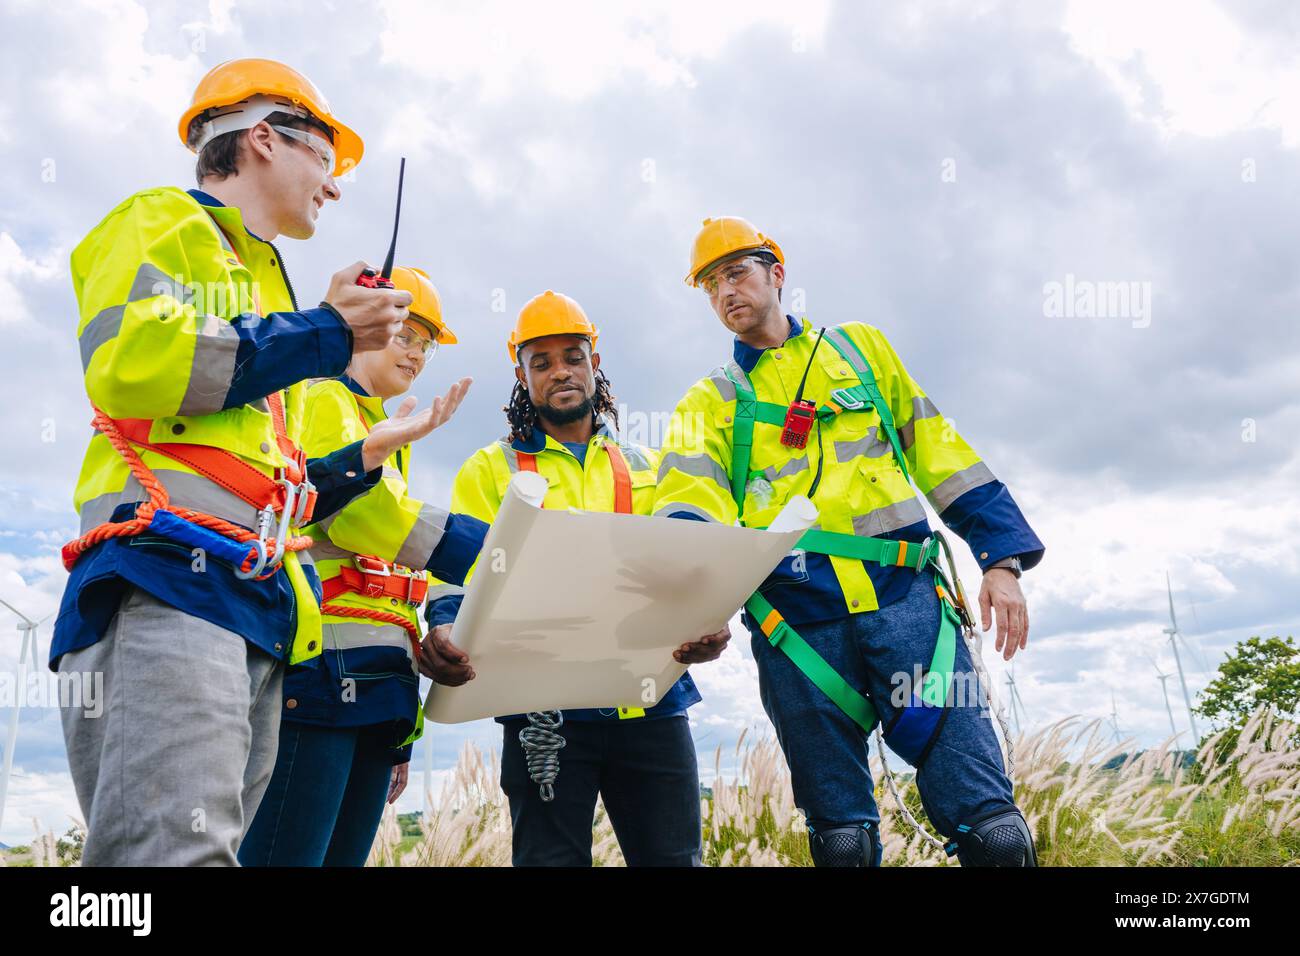 Indagine del gruppo di lavoro del team di ingegneri presso la manutenzione del generatore eolico manutenzione del mulino eolico all'aperto. Foto Stock